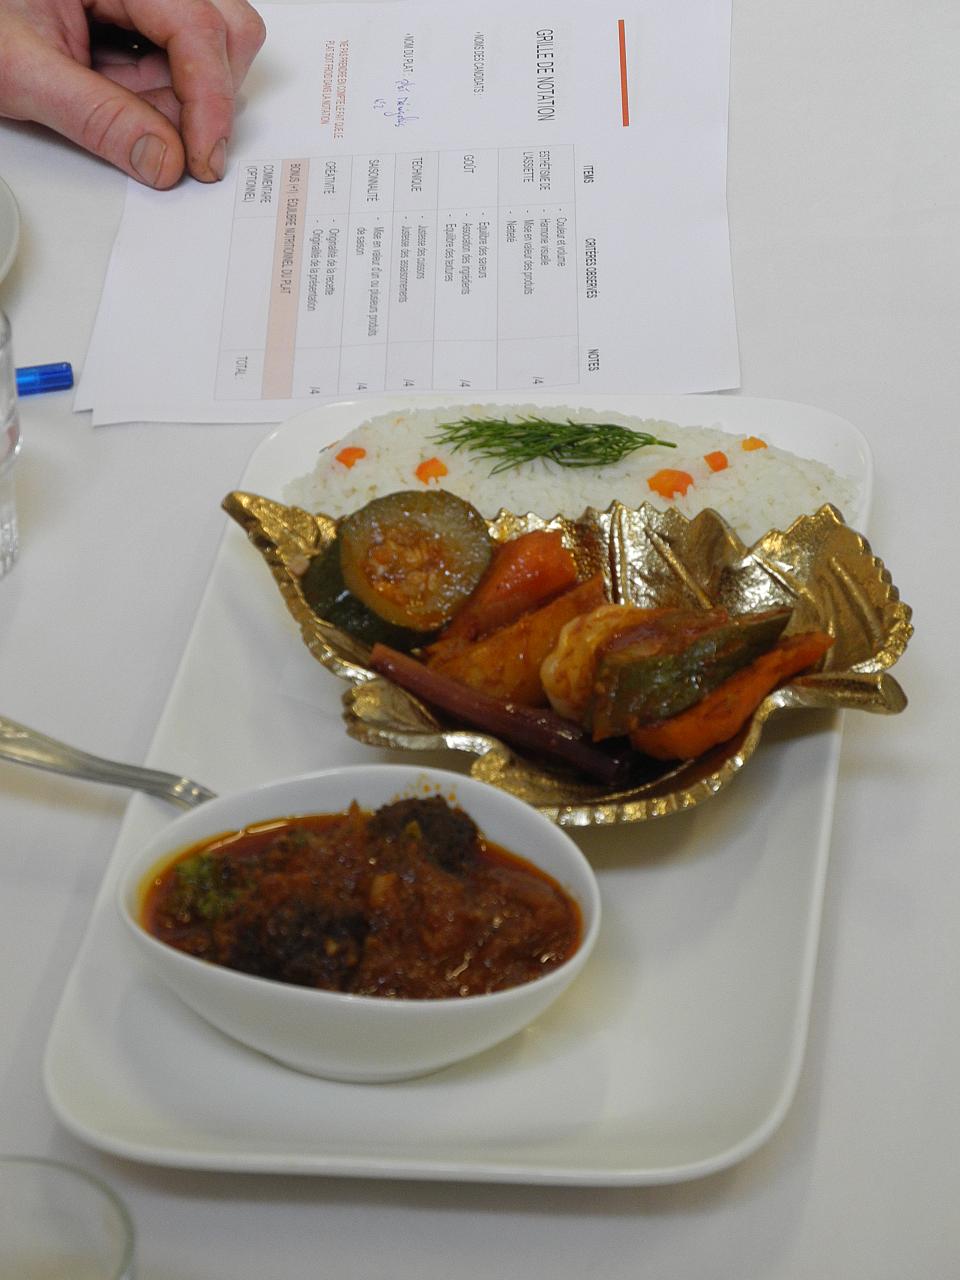 Les plats sont observés, goûtés et notés par le jury. Le Thiou de Maydouna et sa viande en trompe-l'œil ont raflé la mise et remporté le 1er prix.